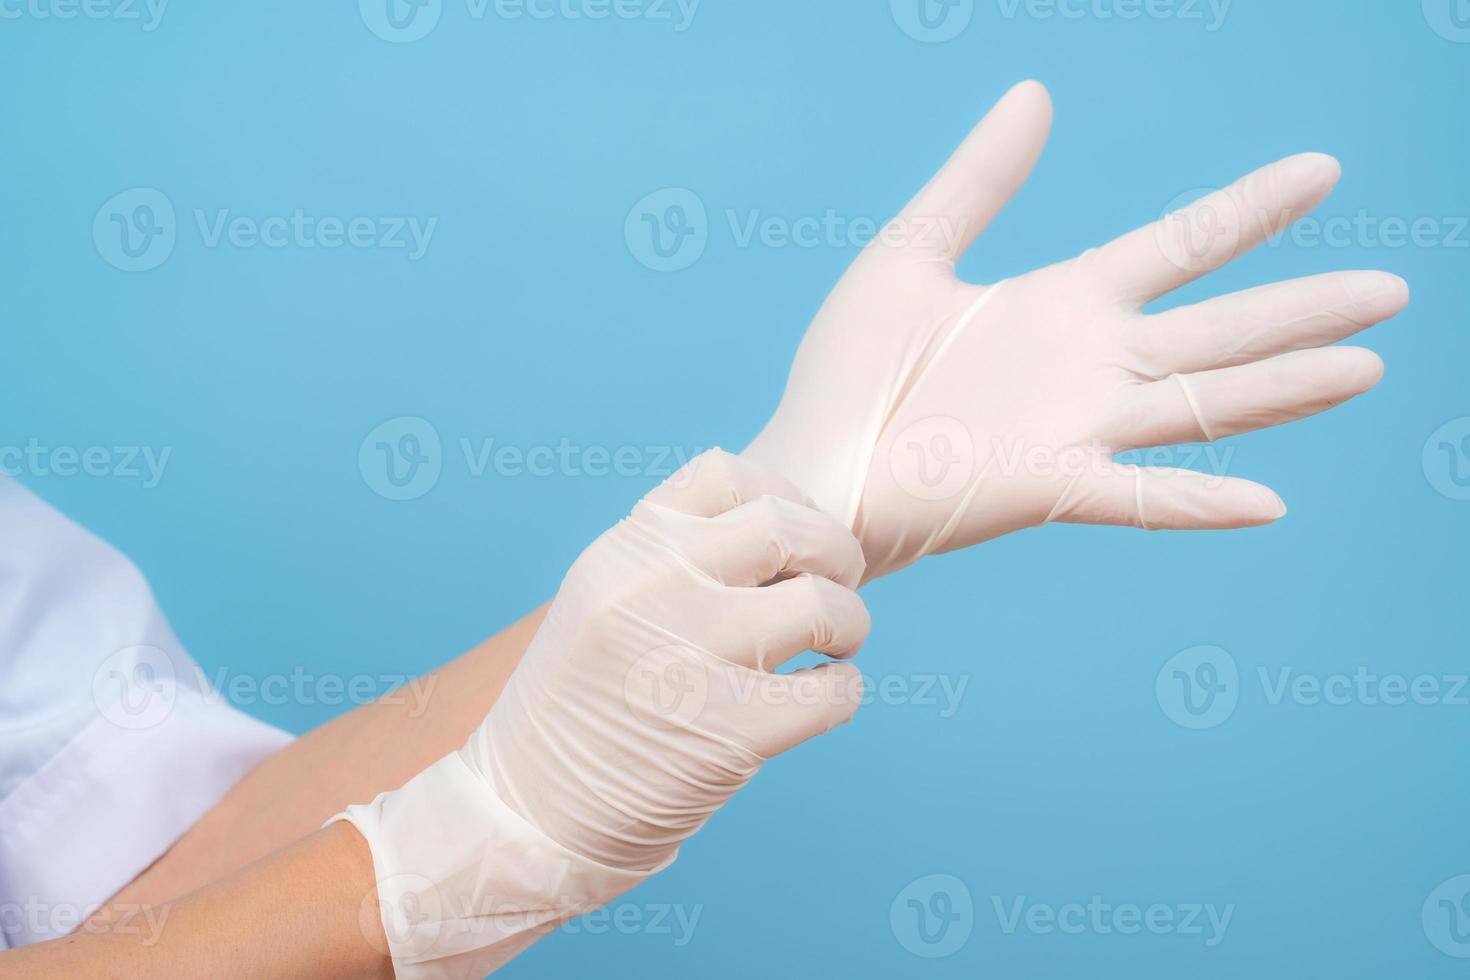 mains dans des gants stériles infirmière ou médecin photo